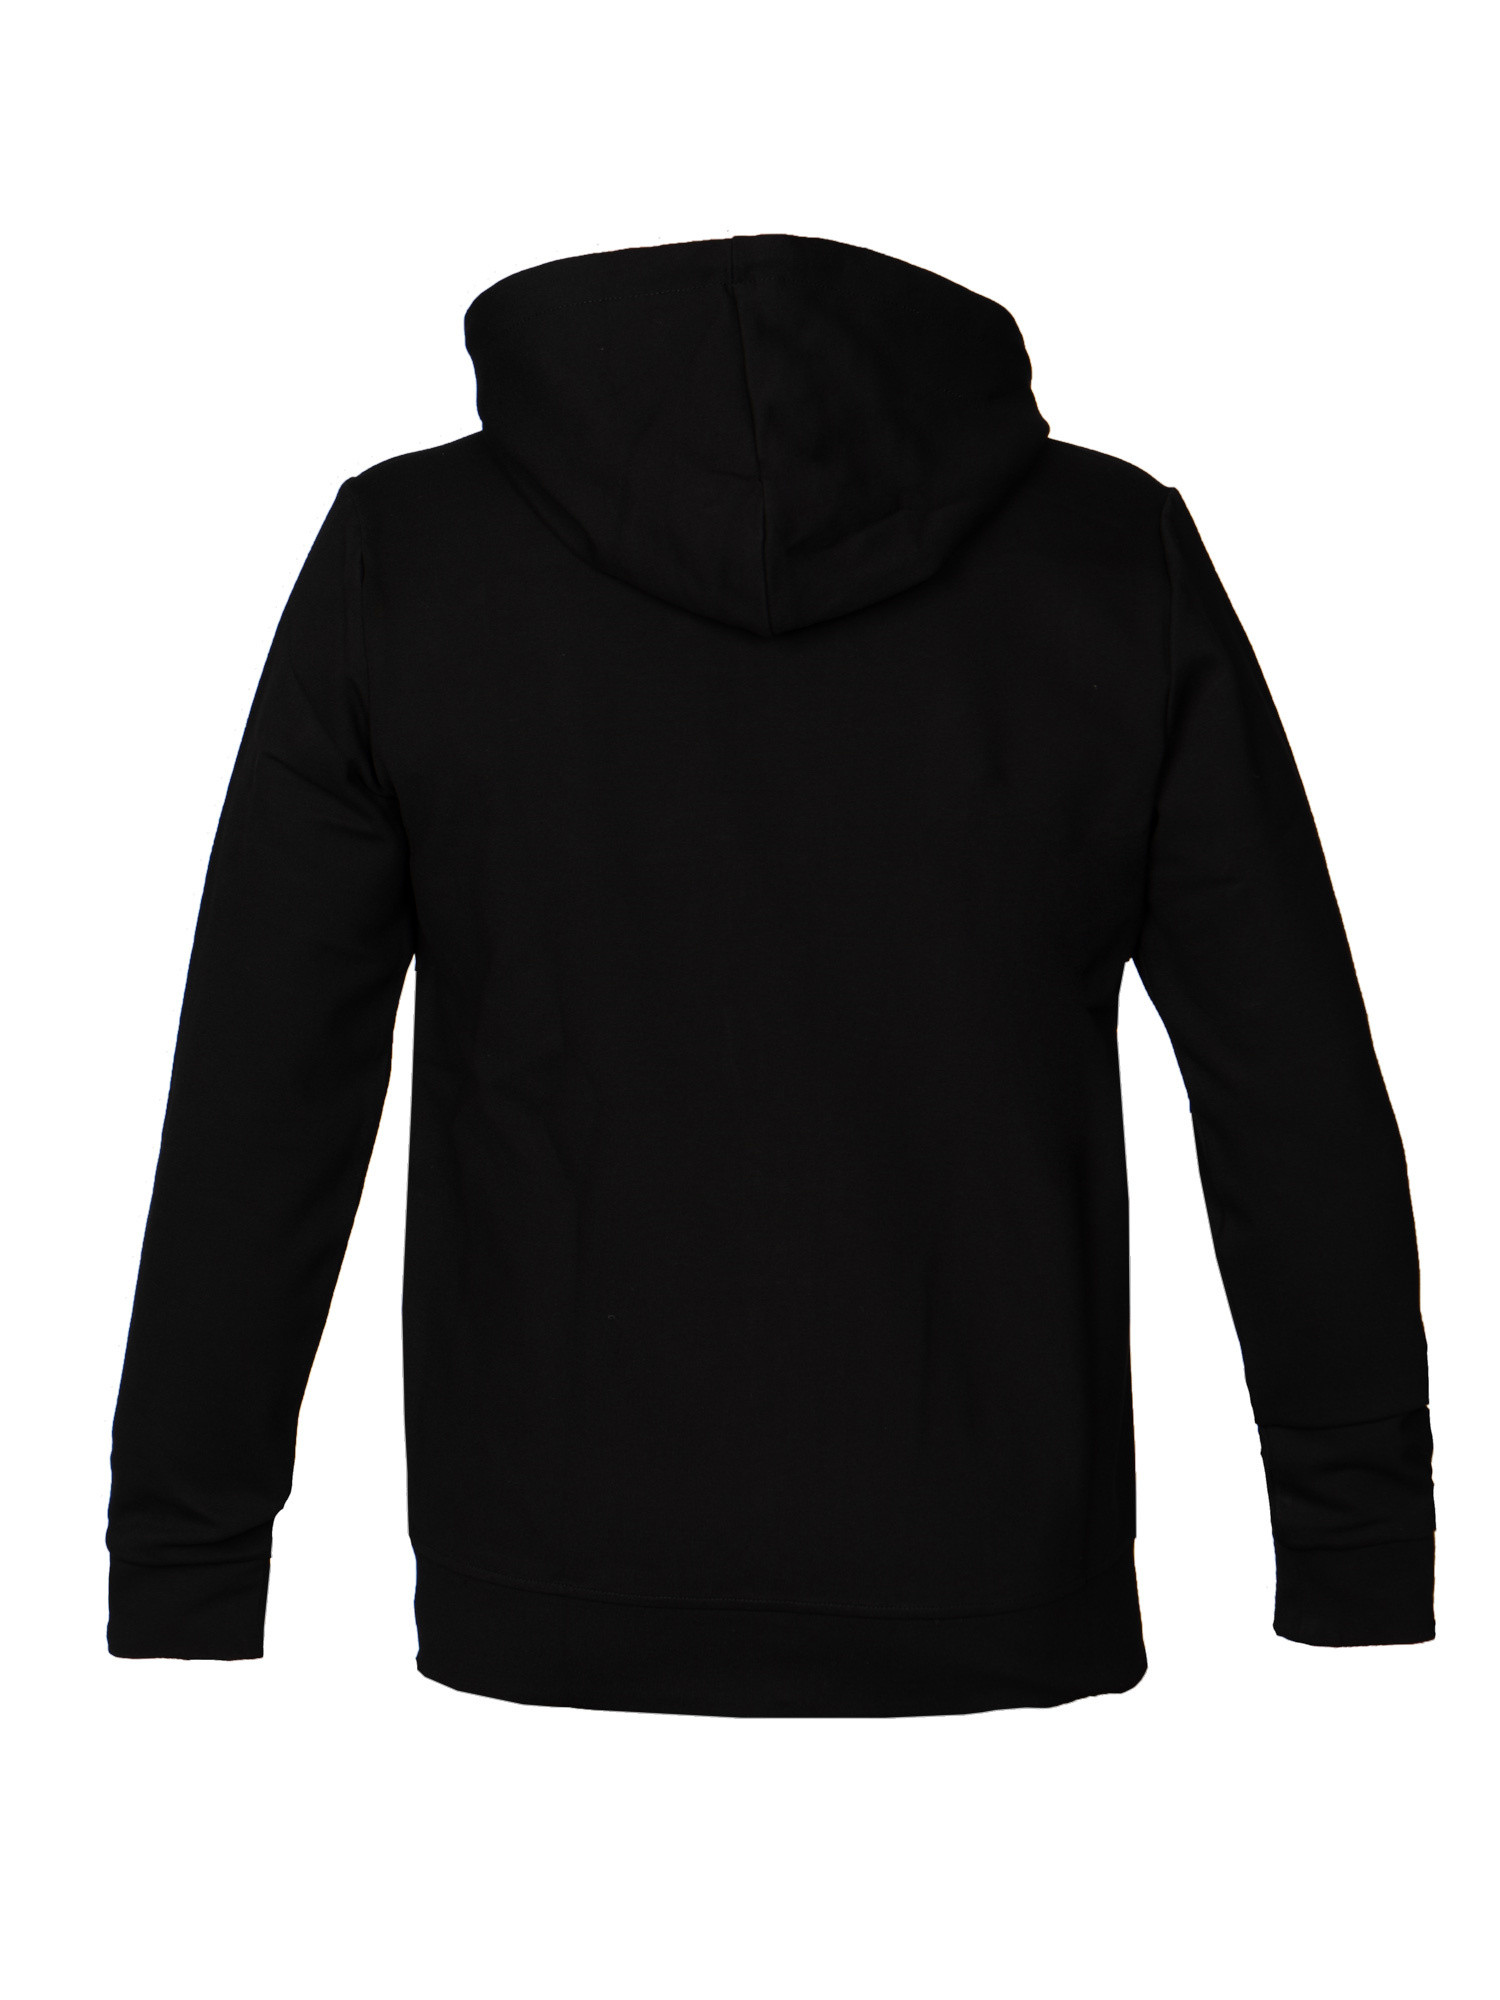 Slim fit sweatshirt with hood and zip, Black, large image number 1